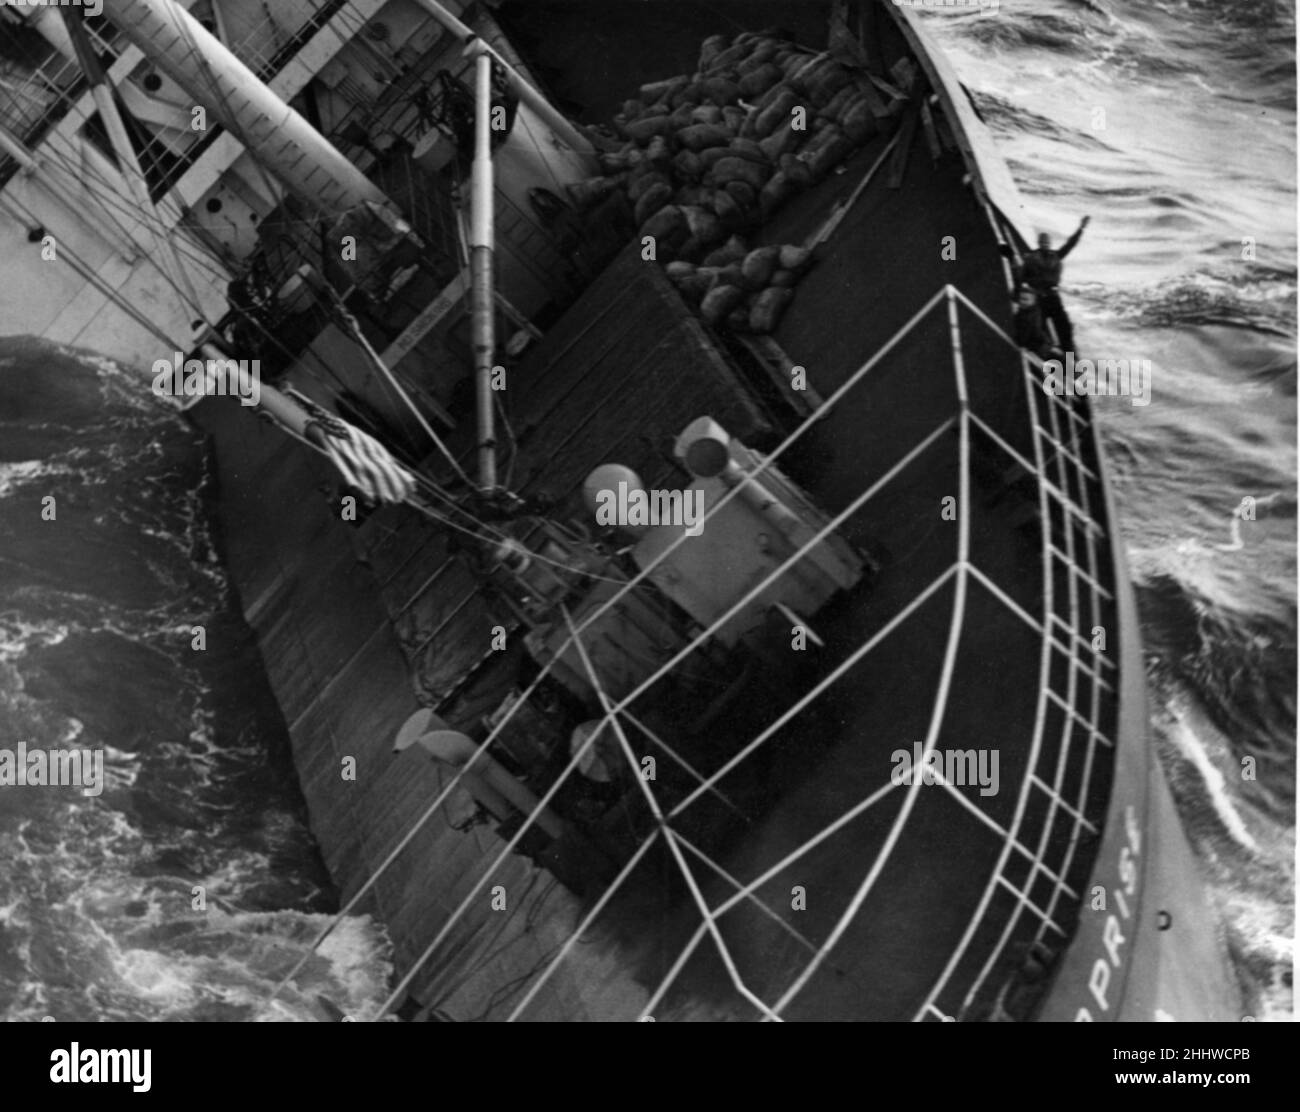 L'entreprise de vol s'est envotée au large de la côte de Cornish le 10th janvier 1952. Le SS Flying Enterprise, un navire cargo Liberty de type C1, qui s'envol à 60 degrés après avoir été pris dans une terrible tempête atlantique alors qu'il se dirigeait de Hambourg vers les États-Unis.Le 21 décembre 1951, elle transportait une cargaison de 1300 tonnes de fer à porc et 900 tonnes de café, plus 10 passagers et 40 membres d'équipage.Le jour de Noël, elle était à environ 400 miles de la fin des terres quand, après avoir pris une batte de la mer et frappé par une vague de freak, une fissure de stress sévère s'est développée à travers son pont principal et environ 4m de chaque côté.Le conin Banque D'Images